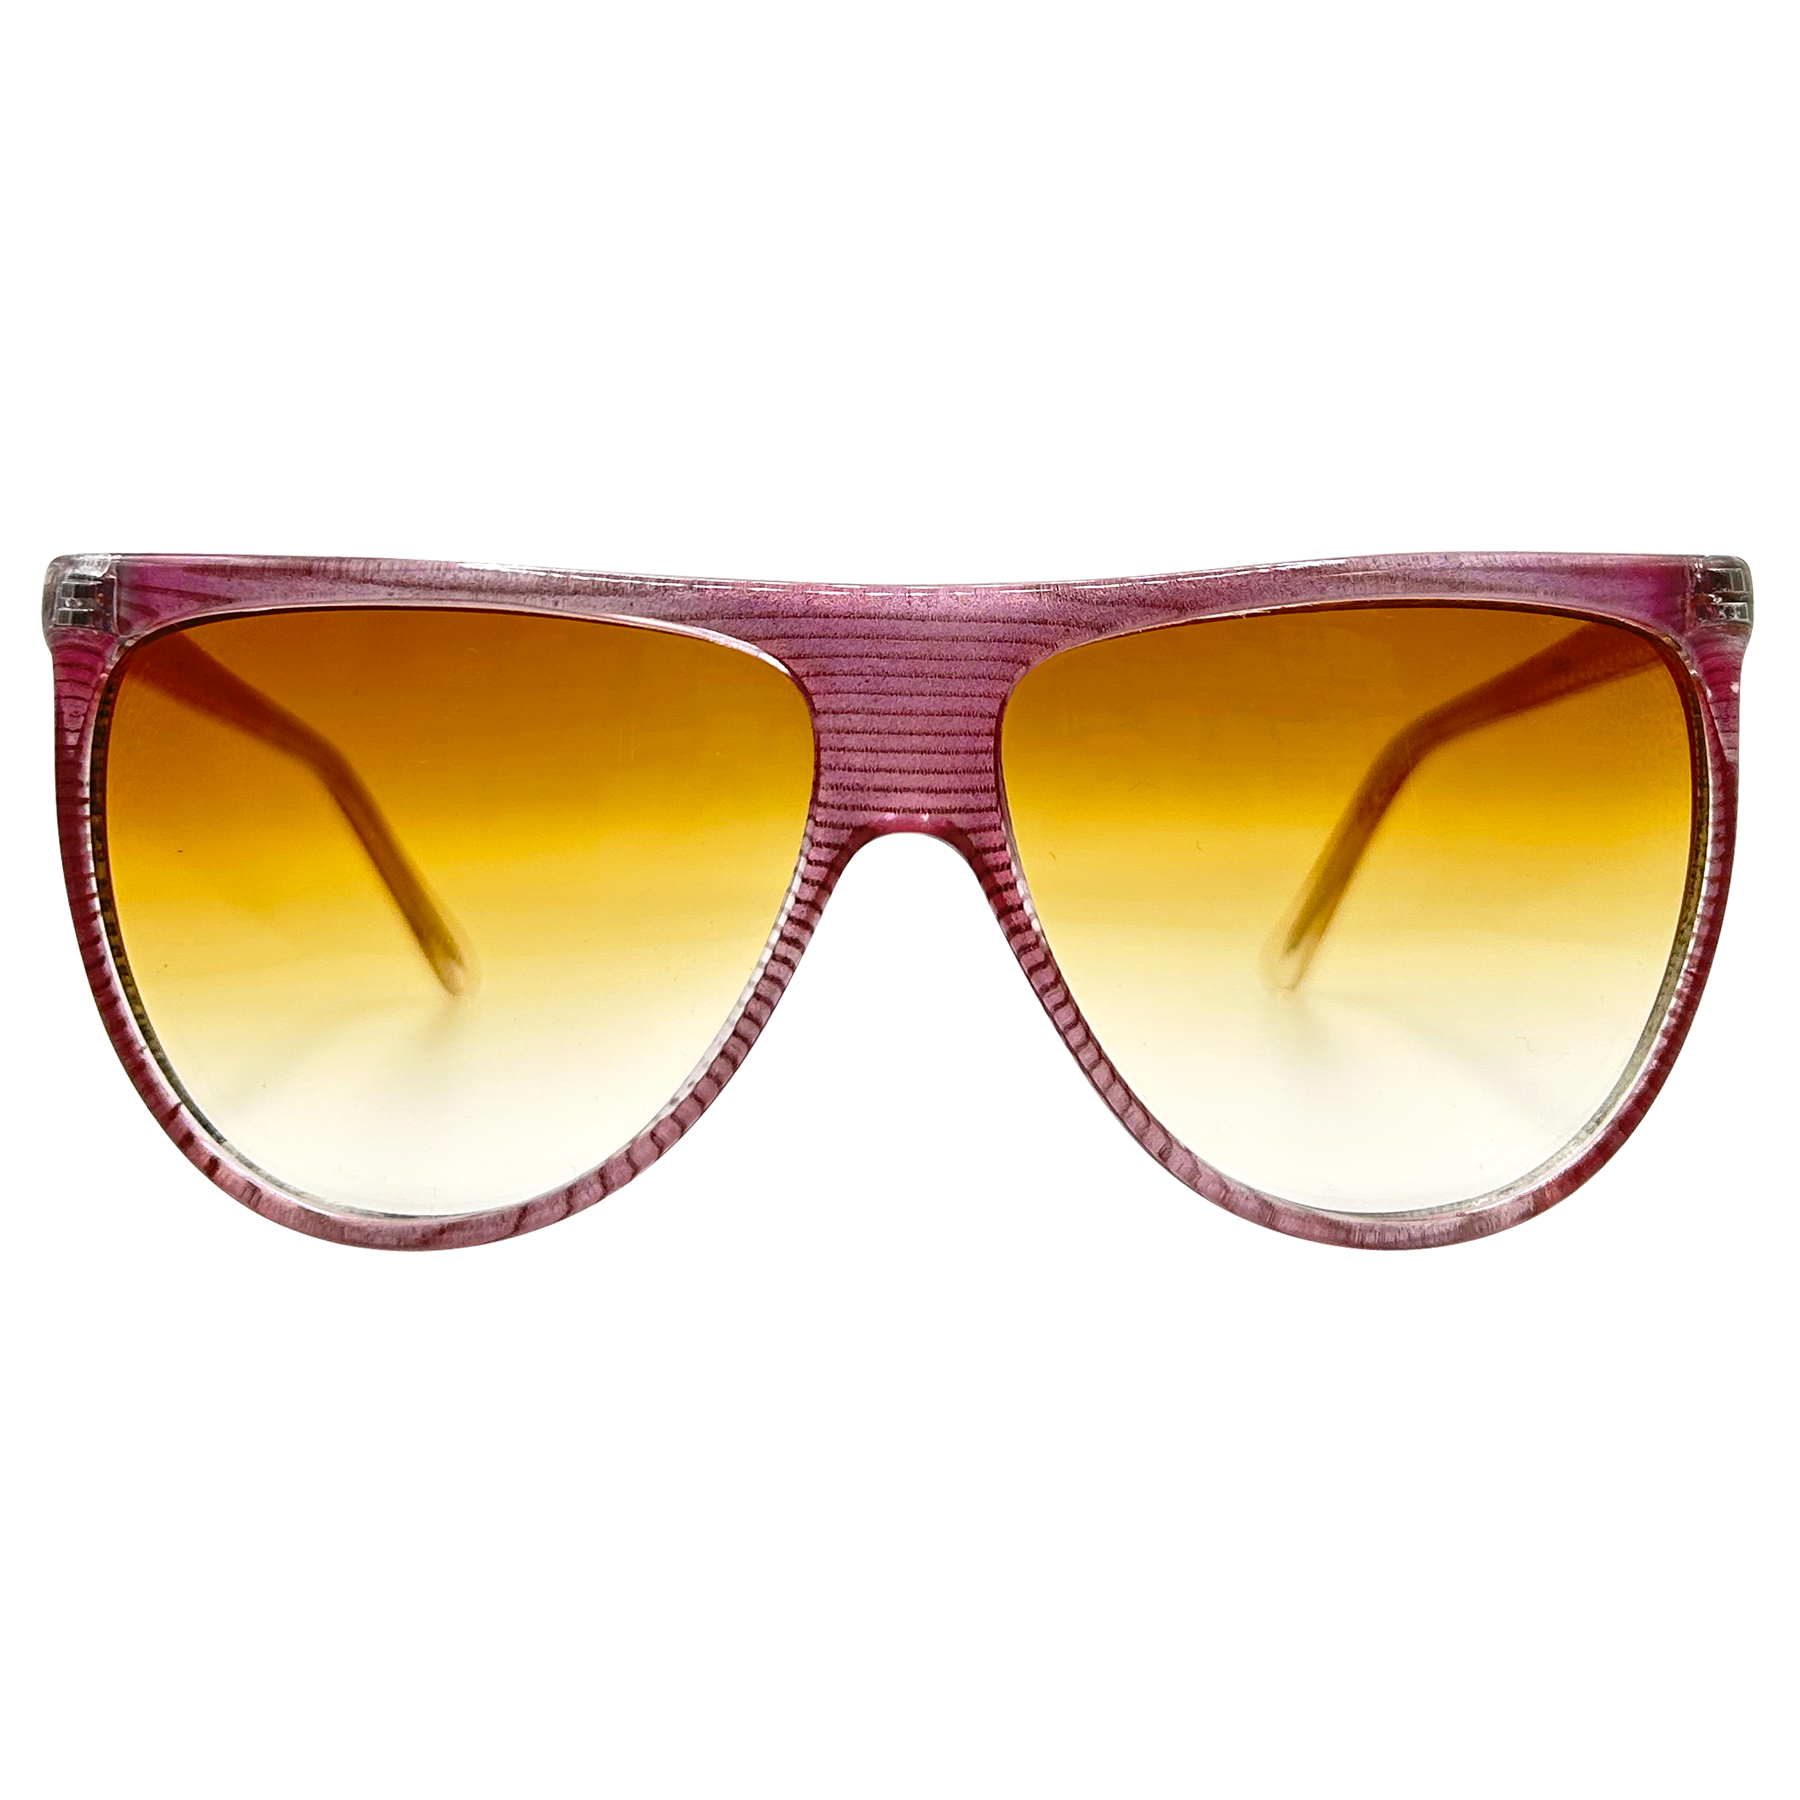 SMIRK Classic Sunglasses